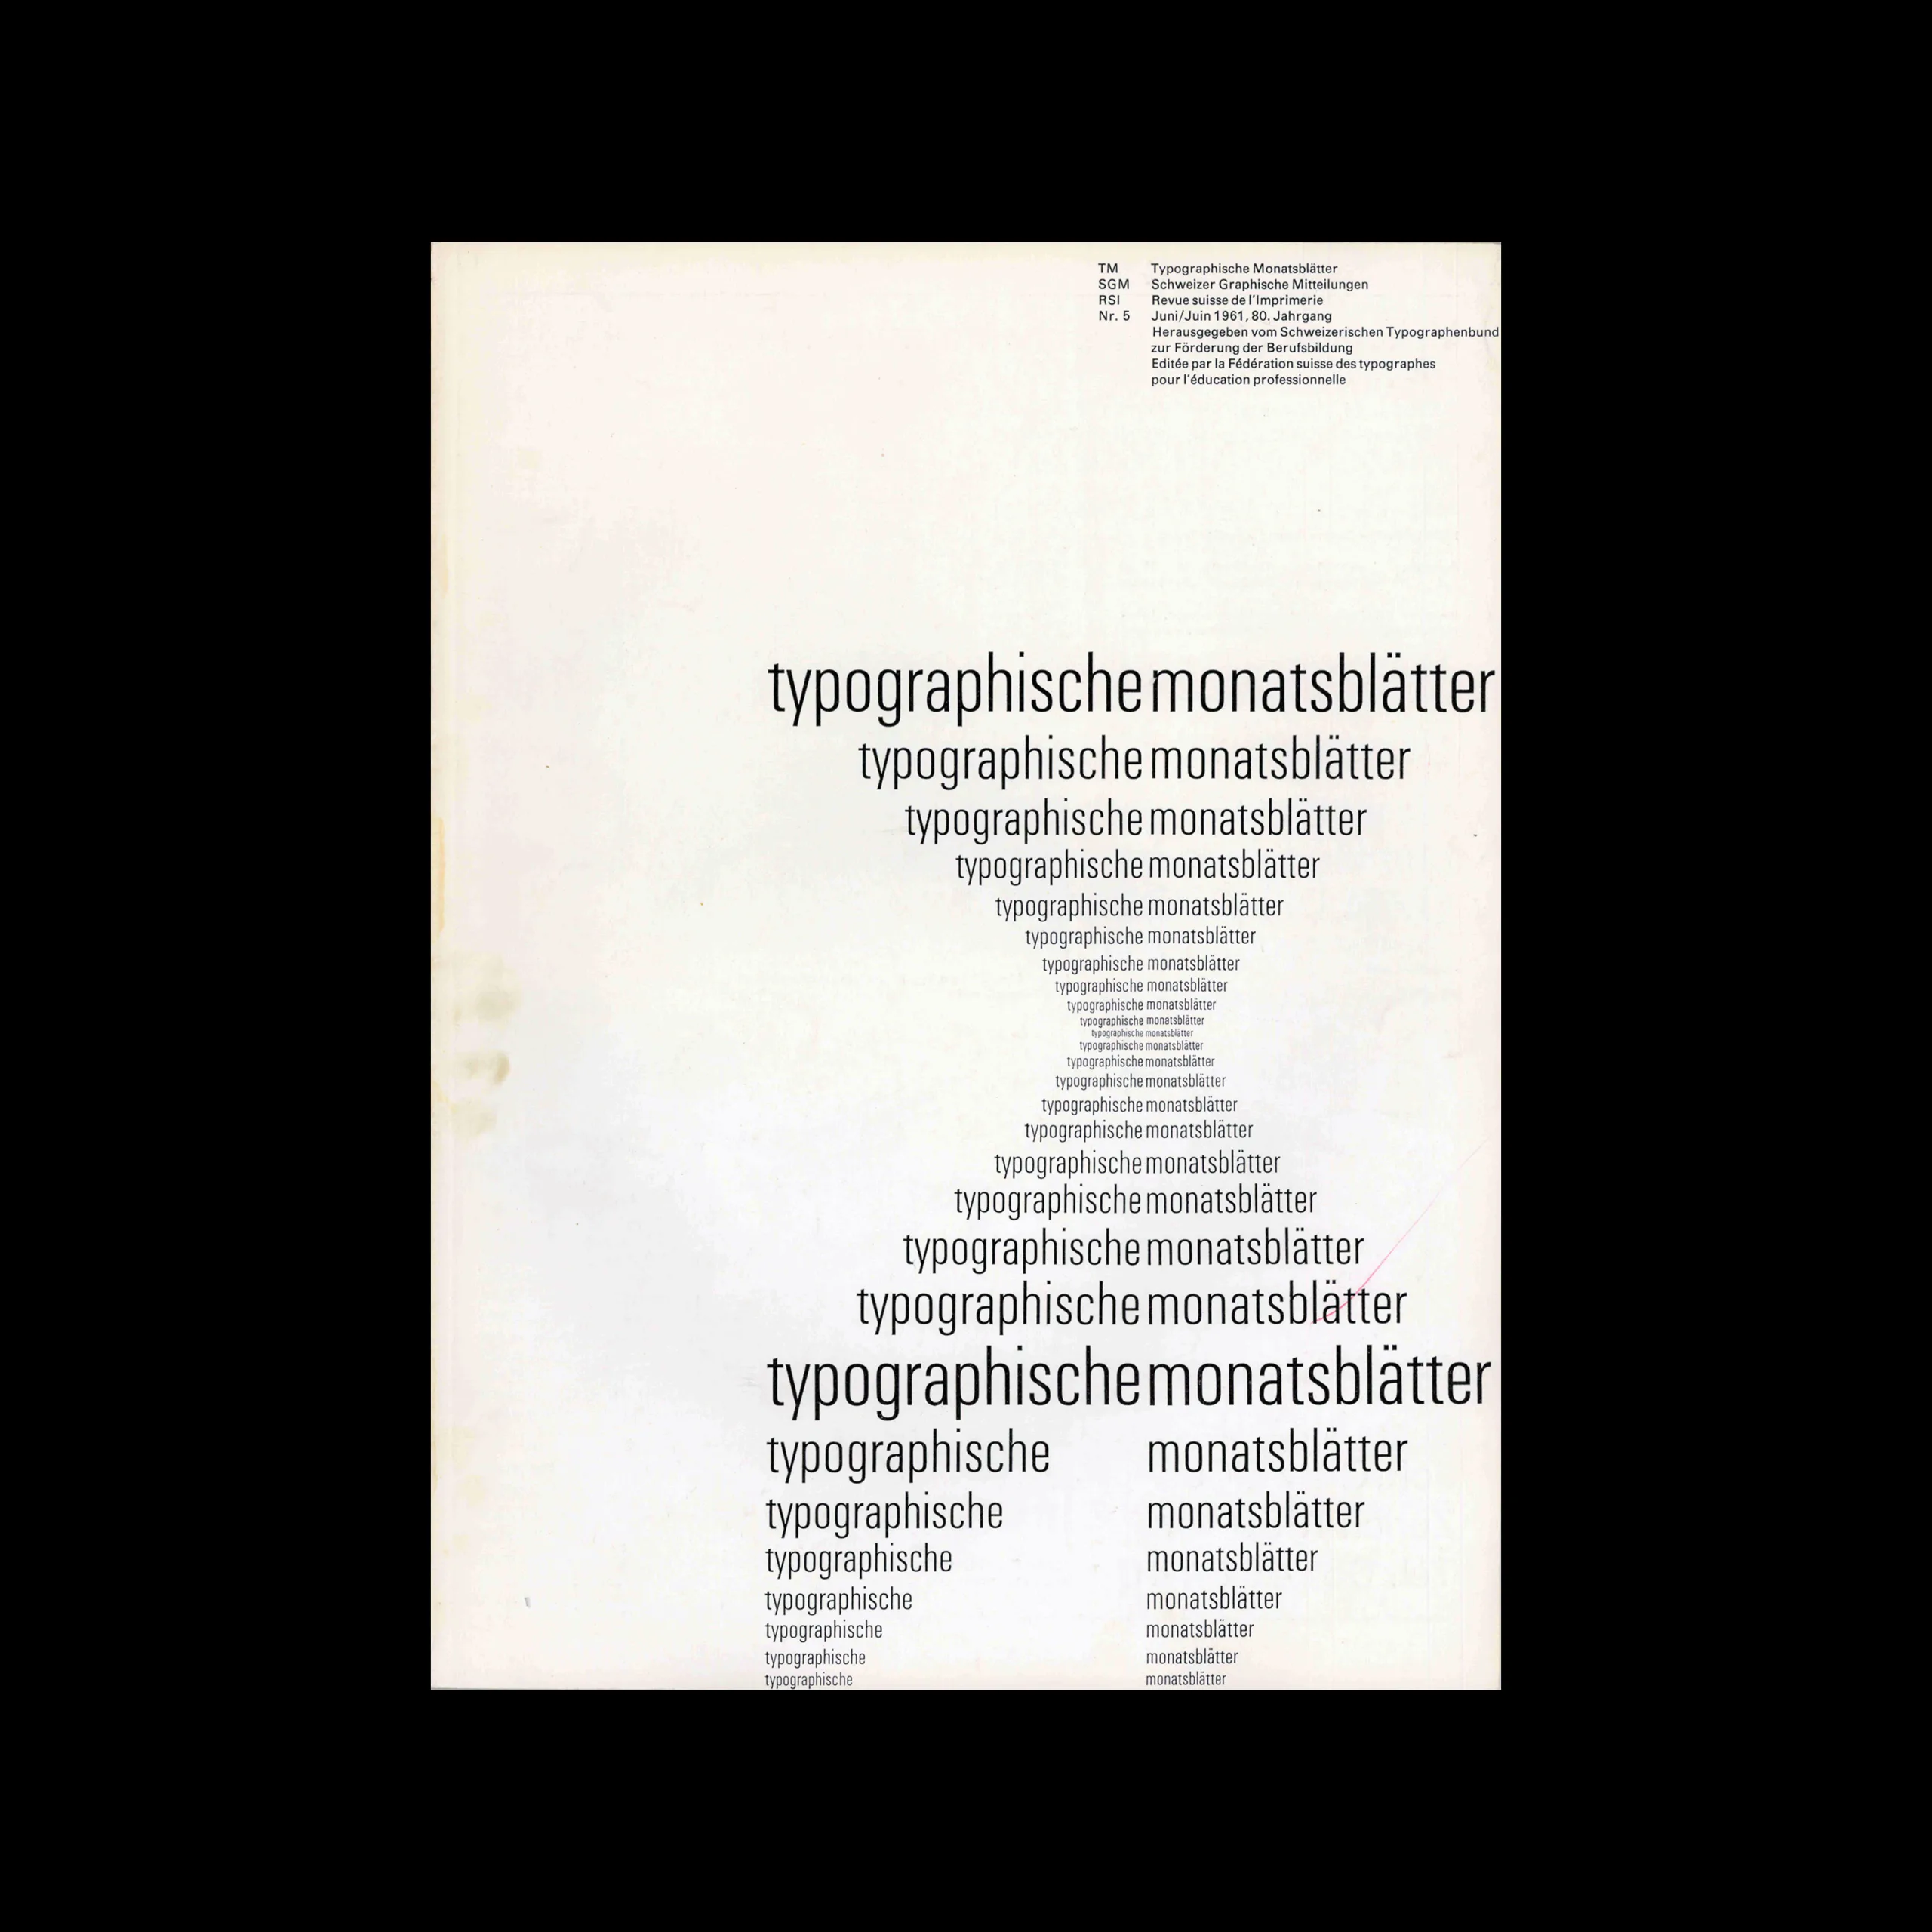 Typografische Monatsblätter, 05, 1961. Cover design by Emil Ruder